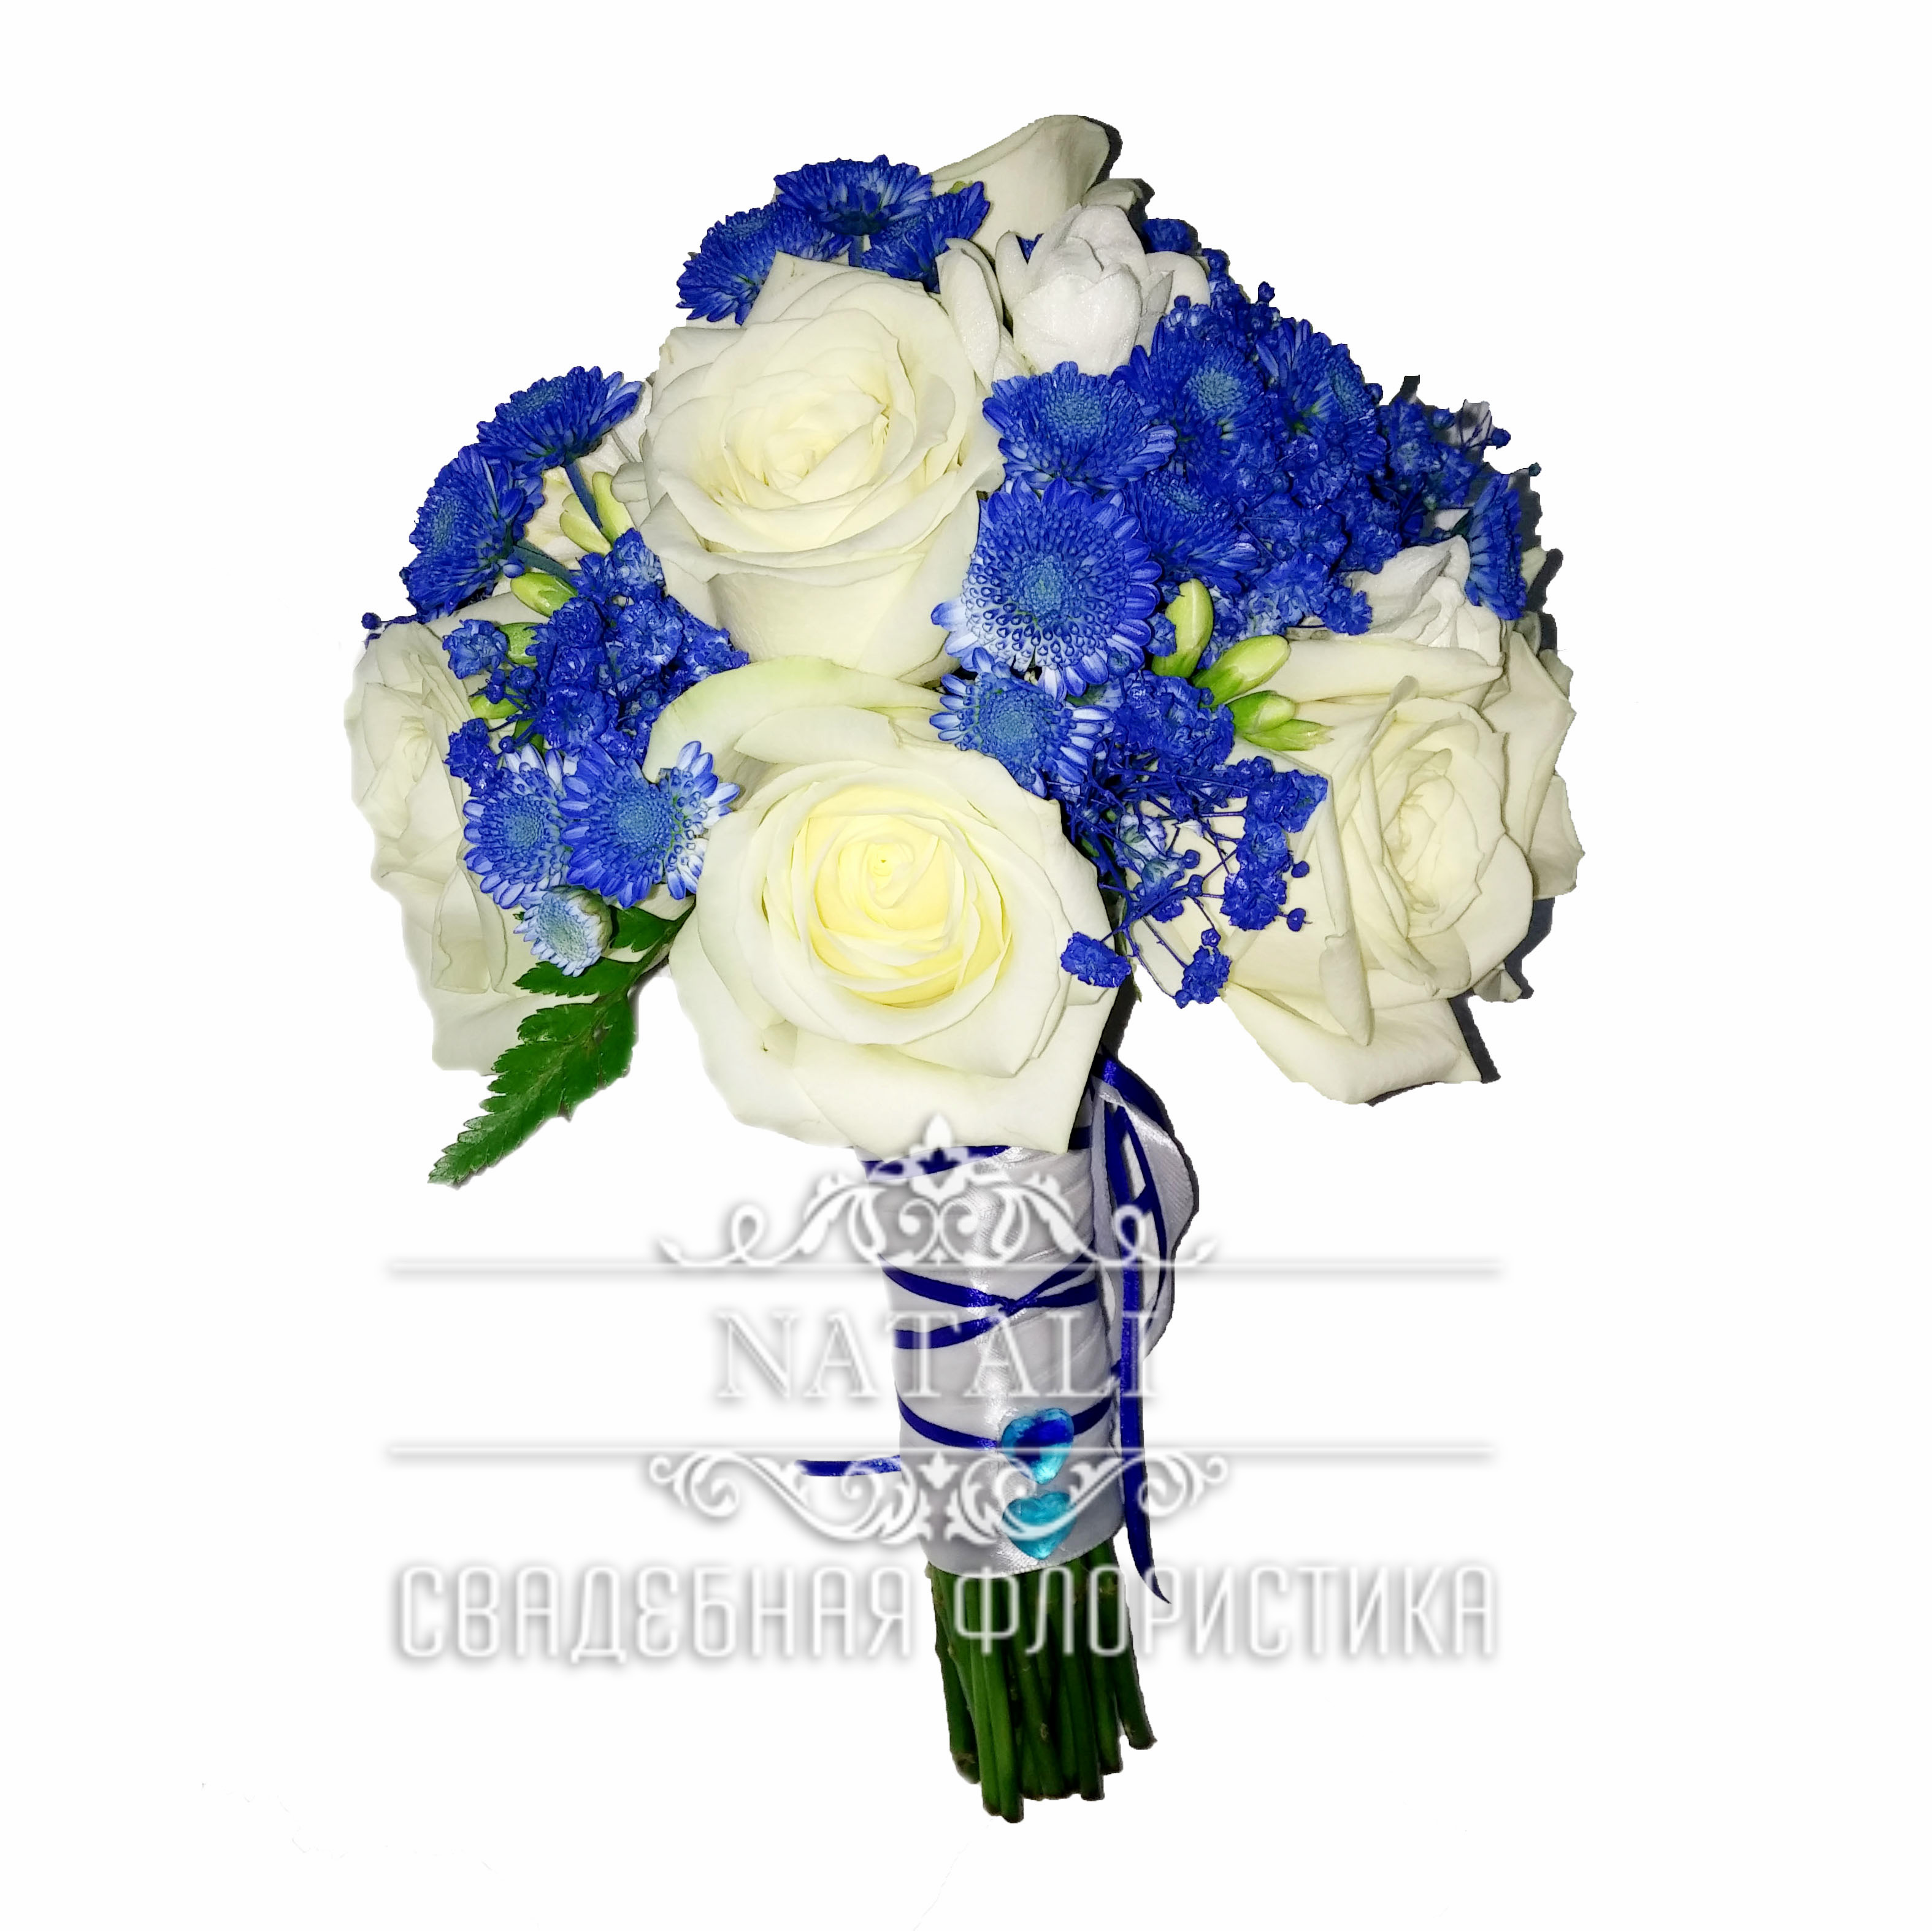 Свадебный букет из синей мелкой хризантемы